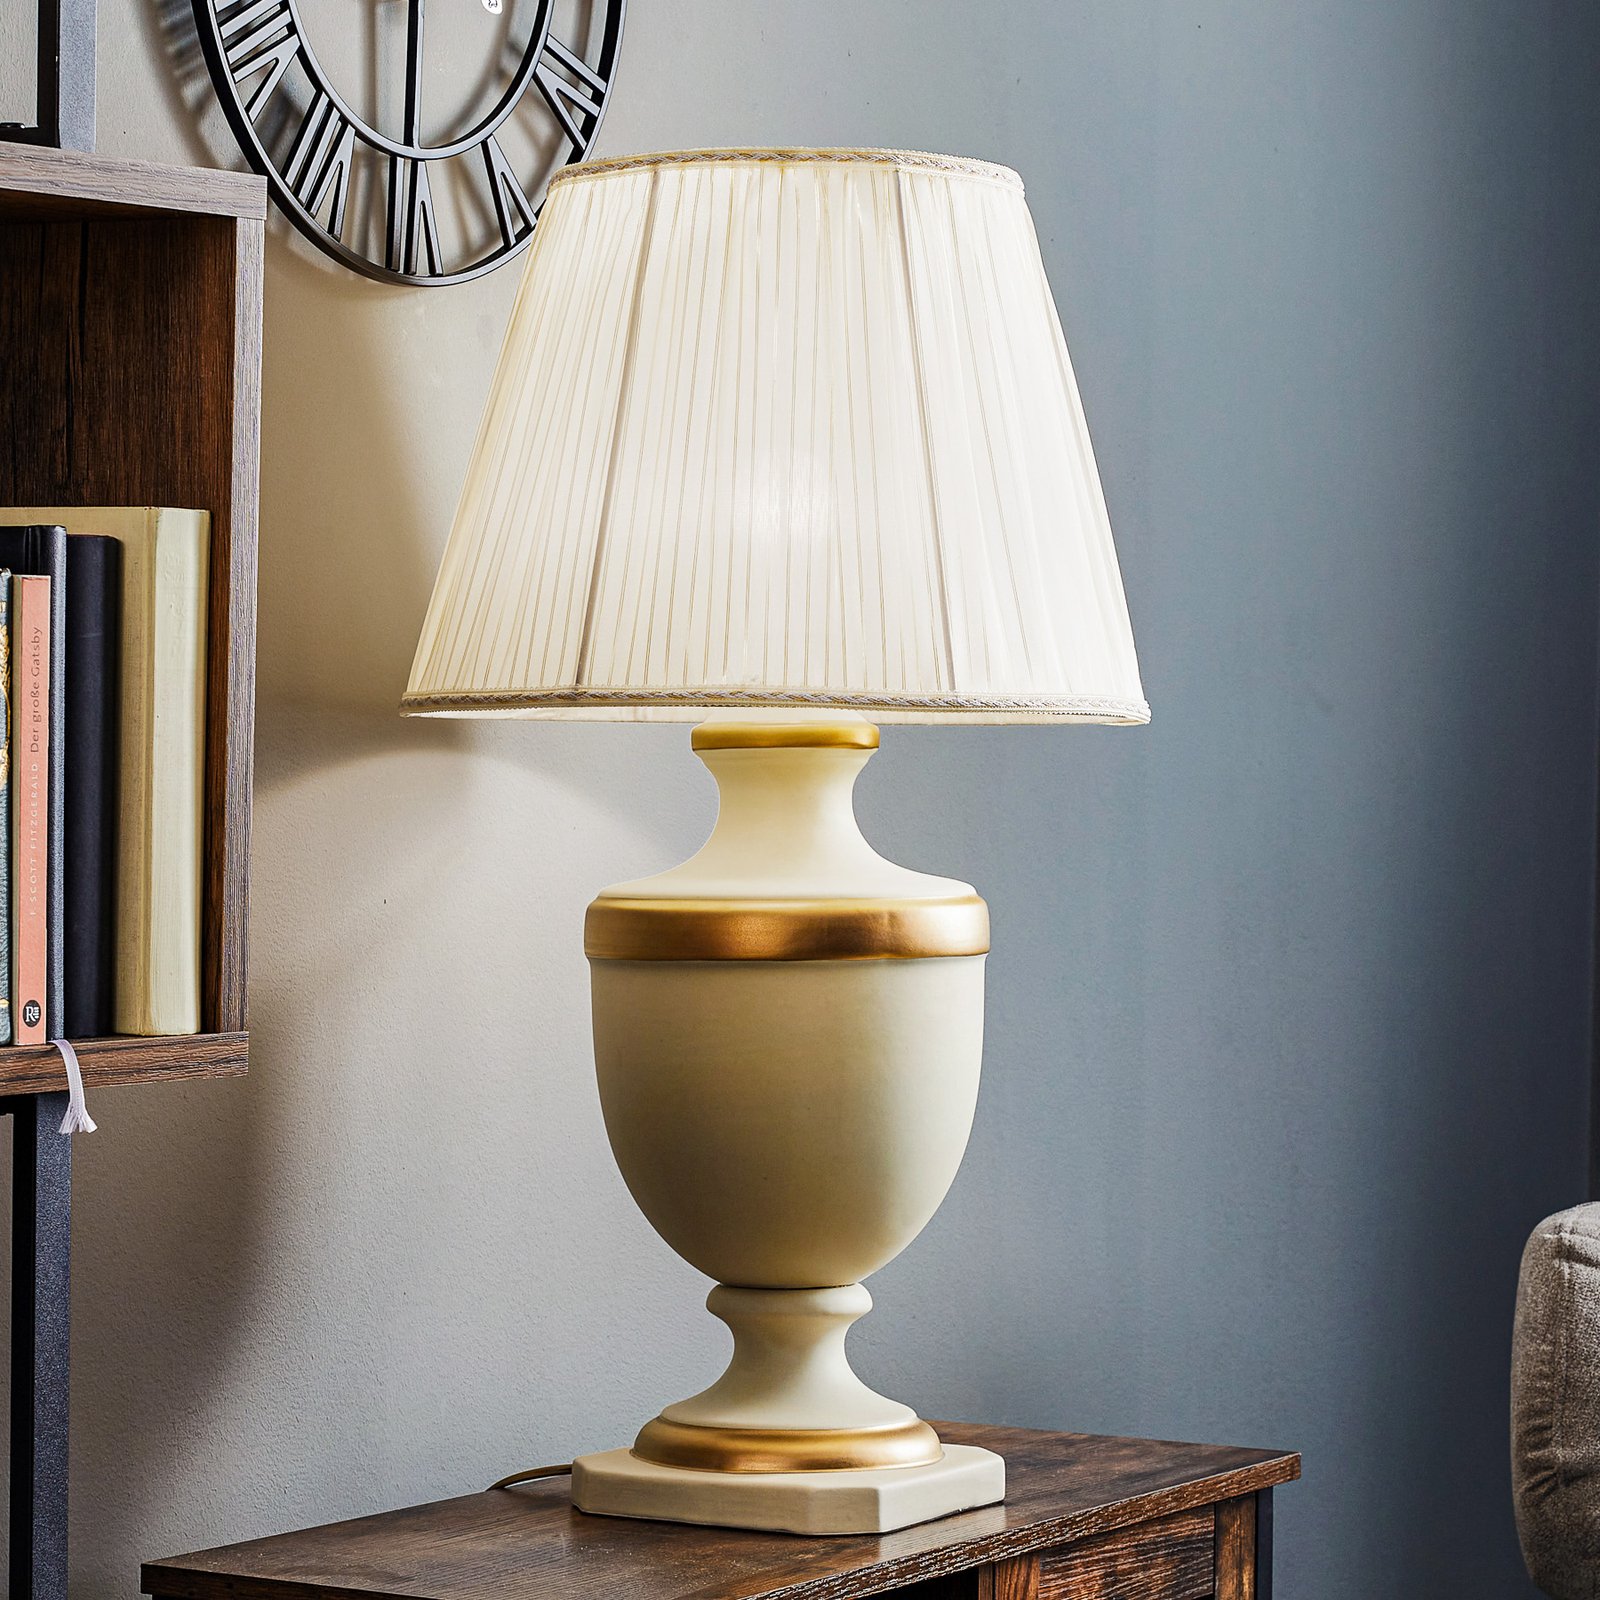 Bordslampa Imperiale av keramik, höjd 66 cm